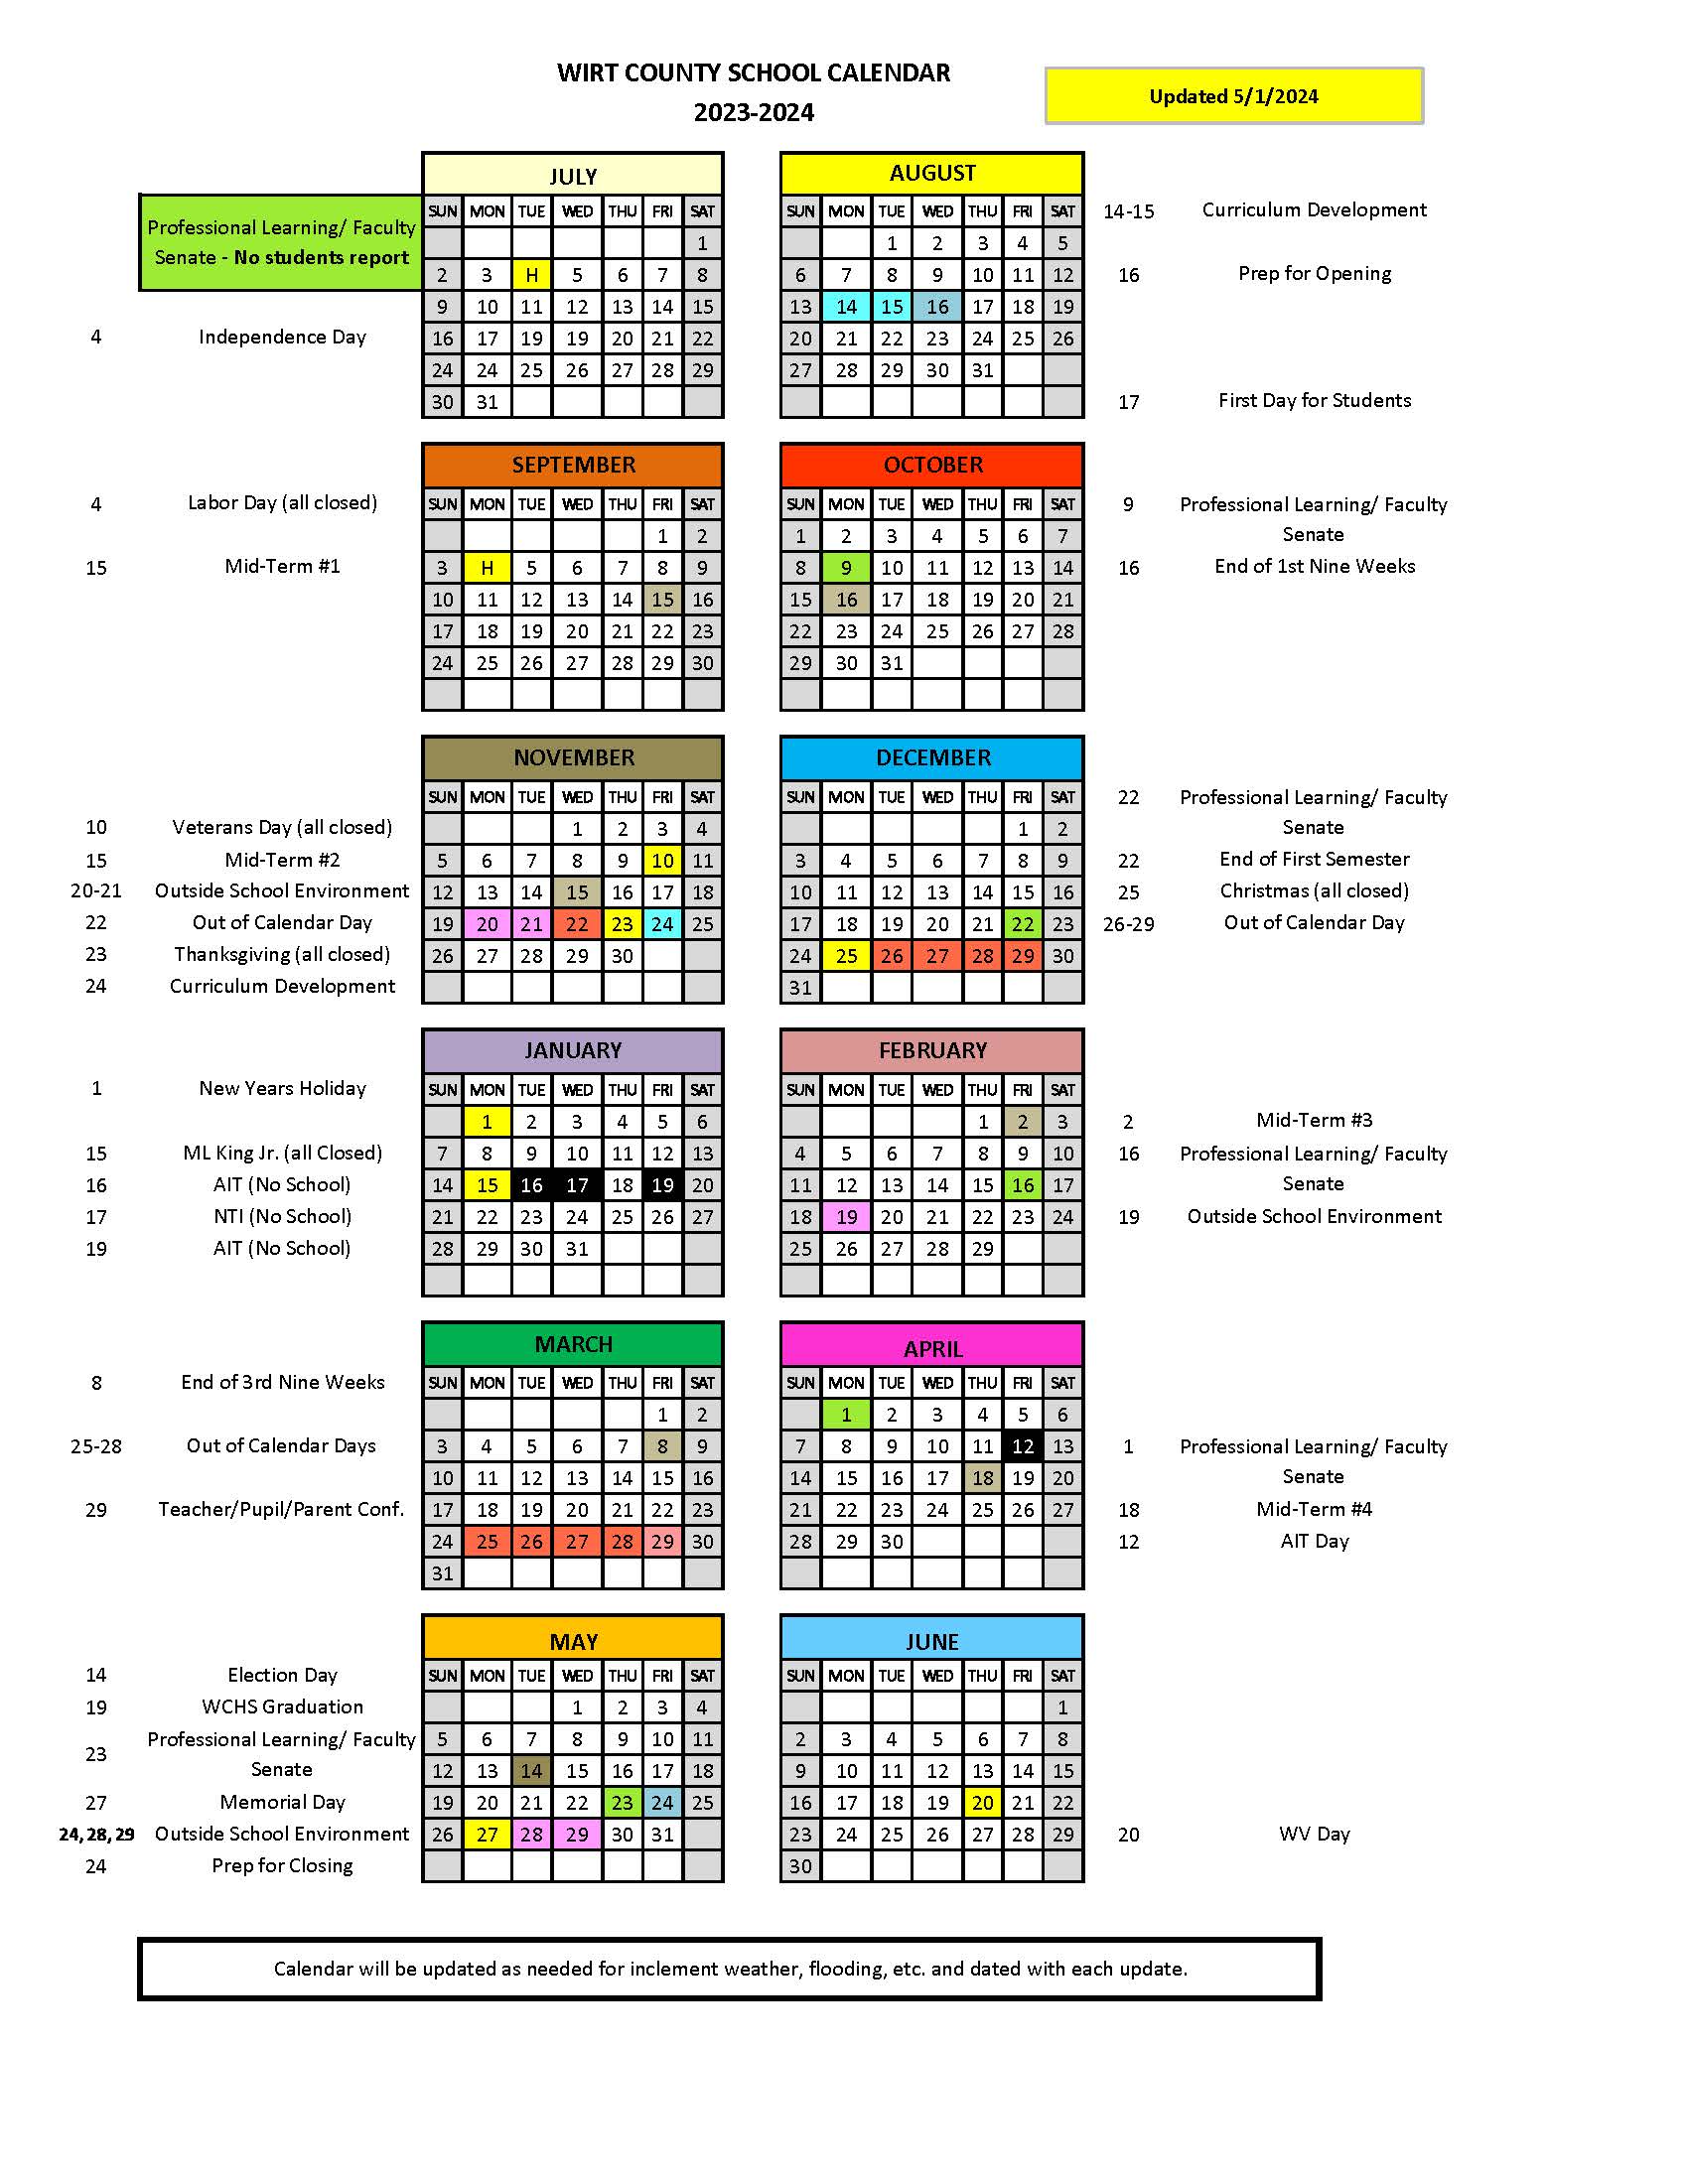 Final calendar update 23-24